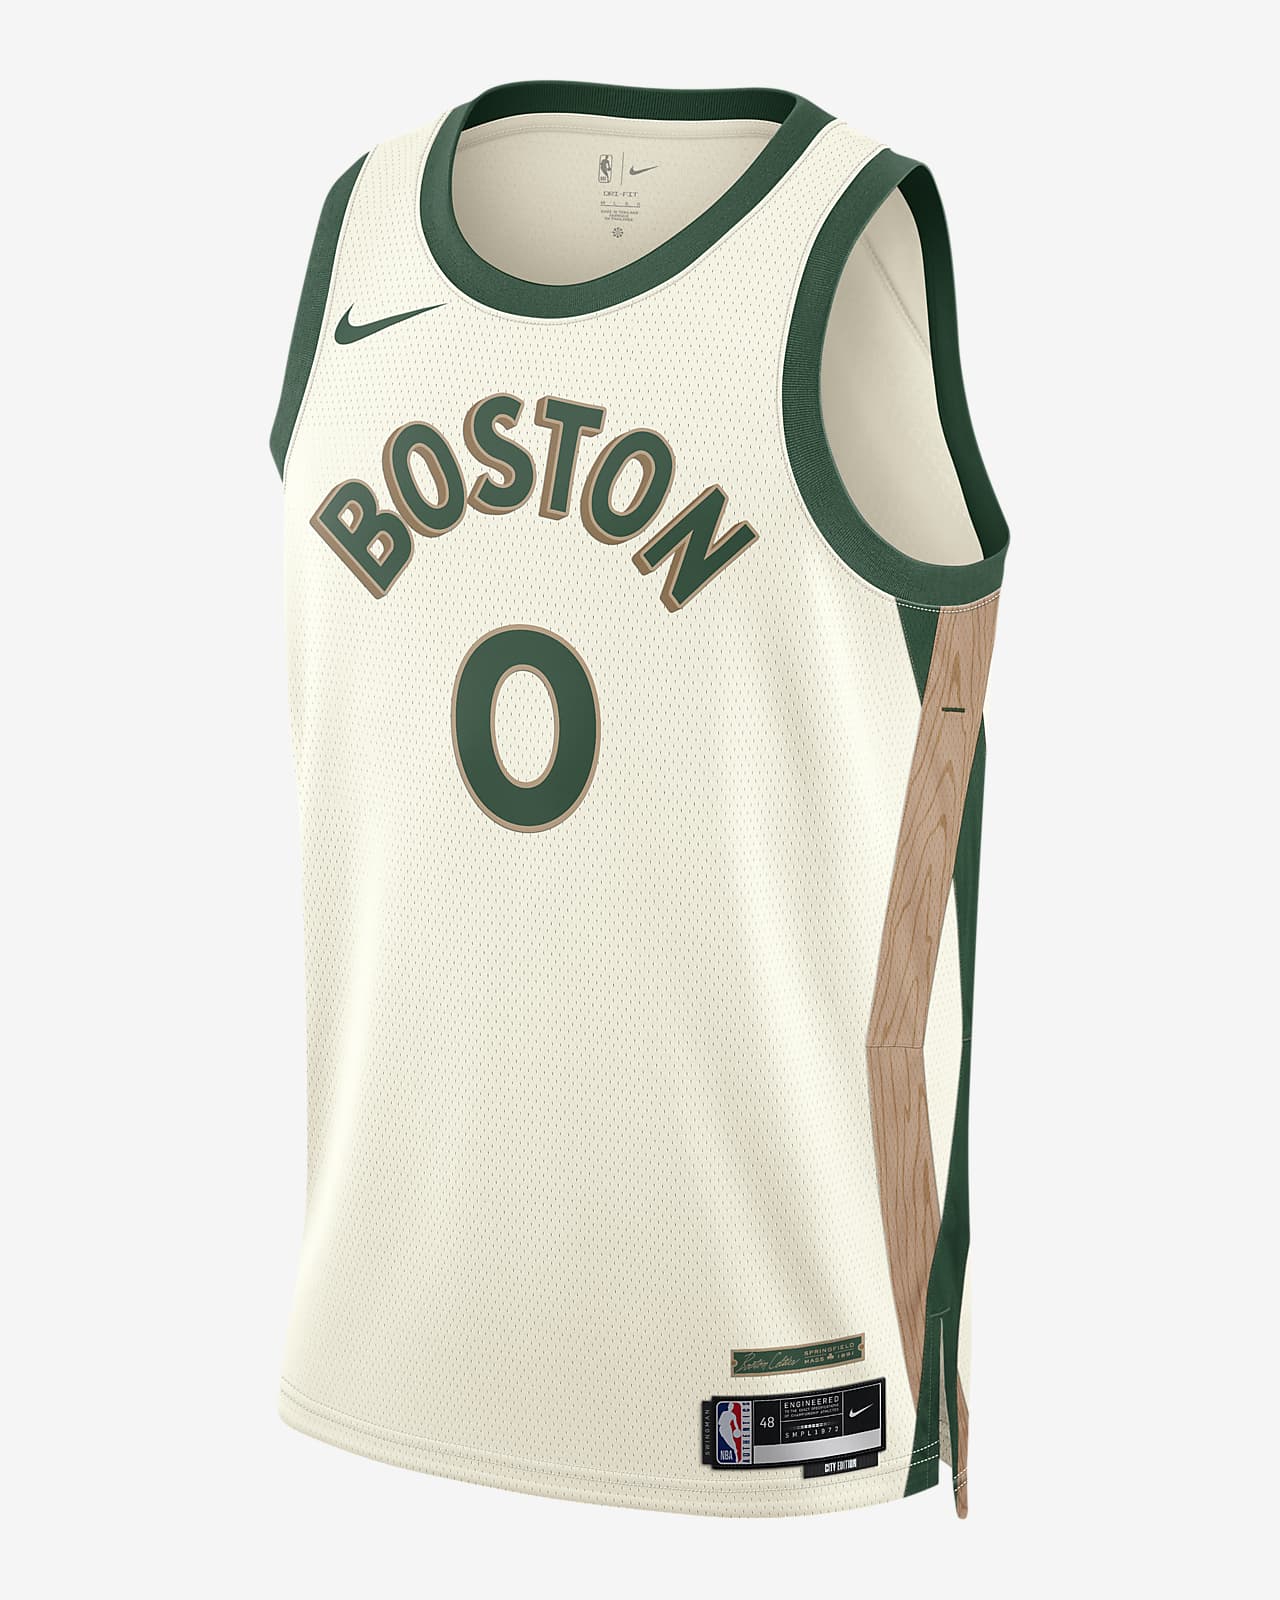 Ανδρική φανέλα Nike Dri-FIT NBA Swingman Jayson Tatum Μπόστον Σέλτικς City Edition 2023/24